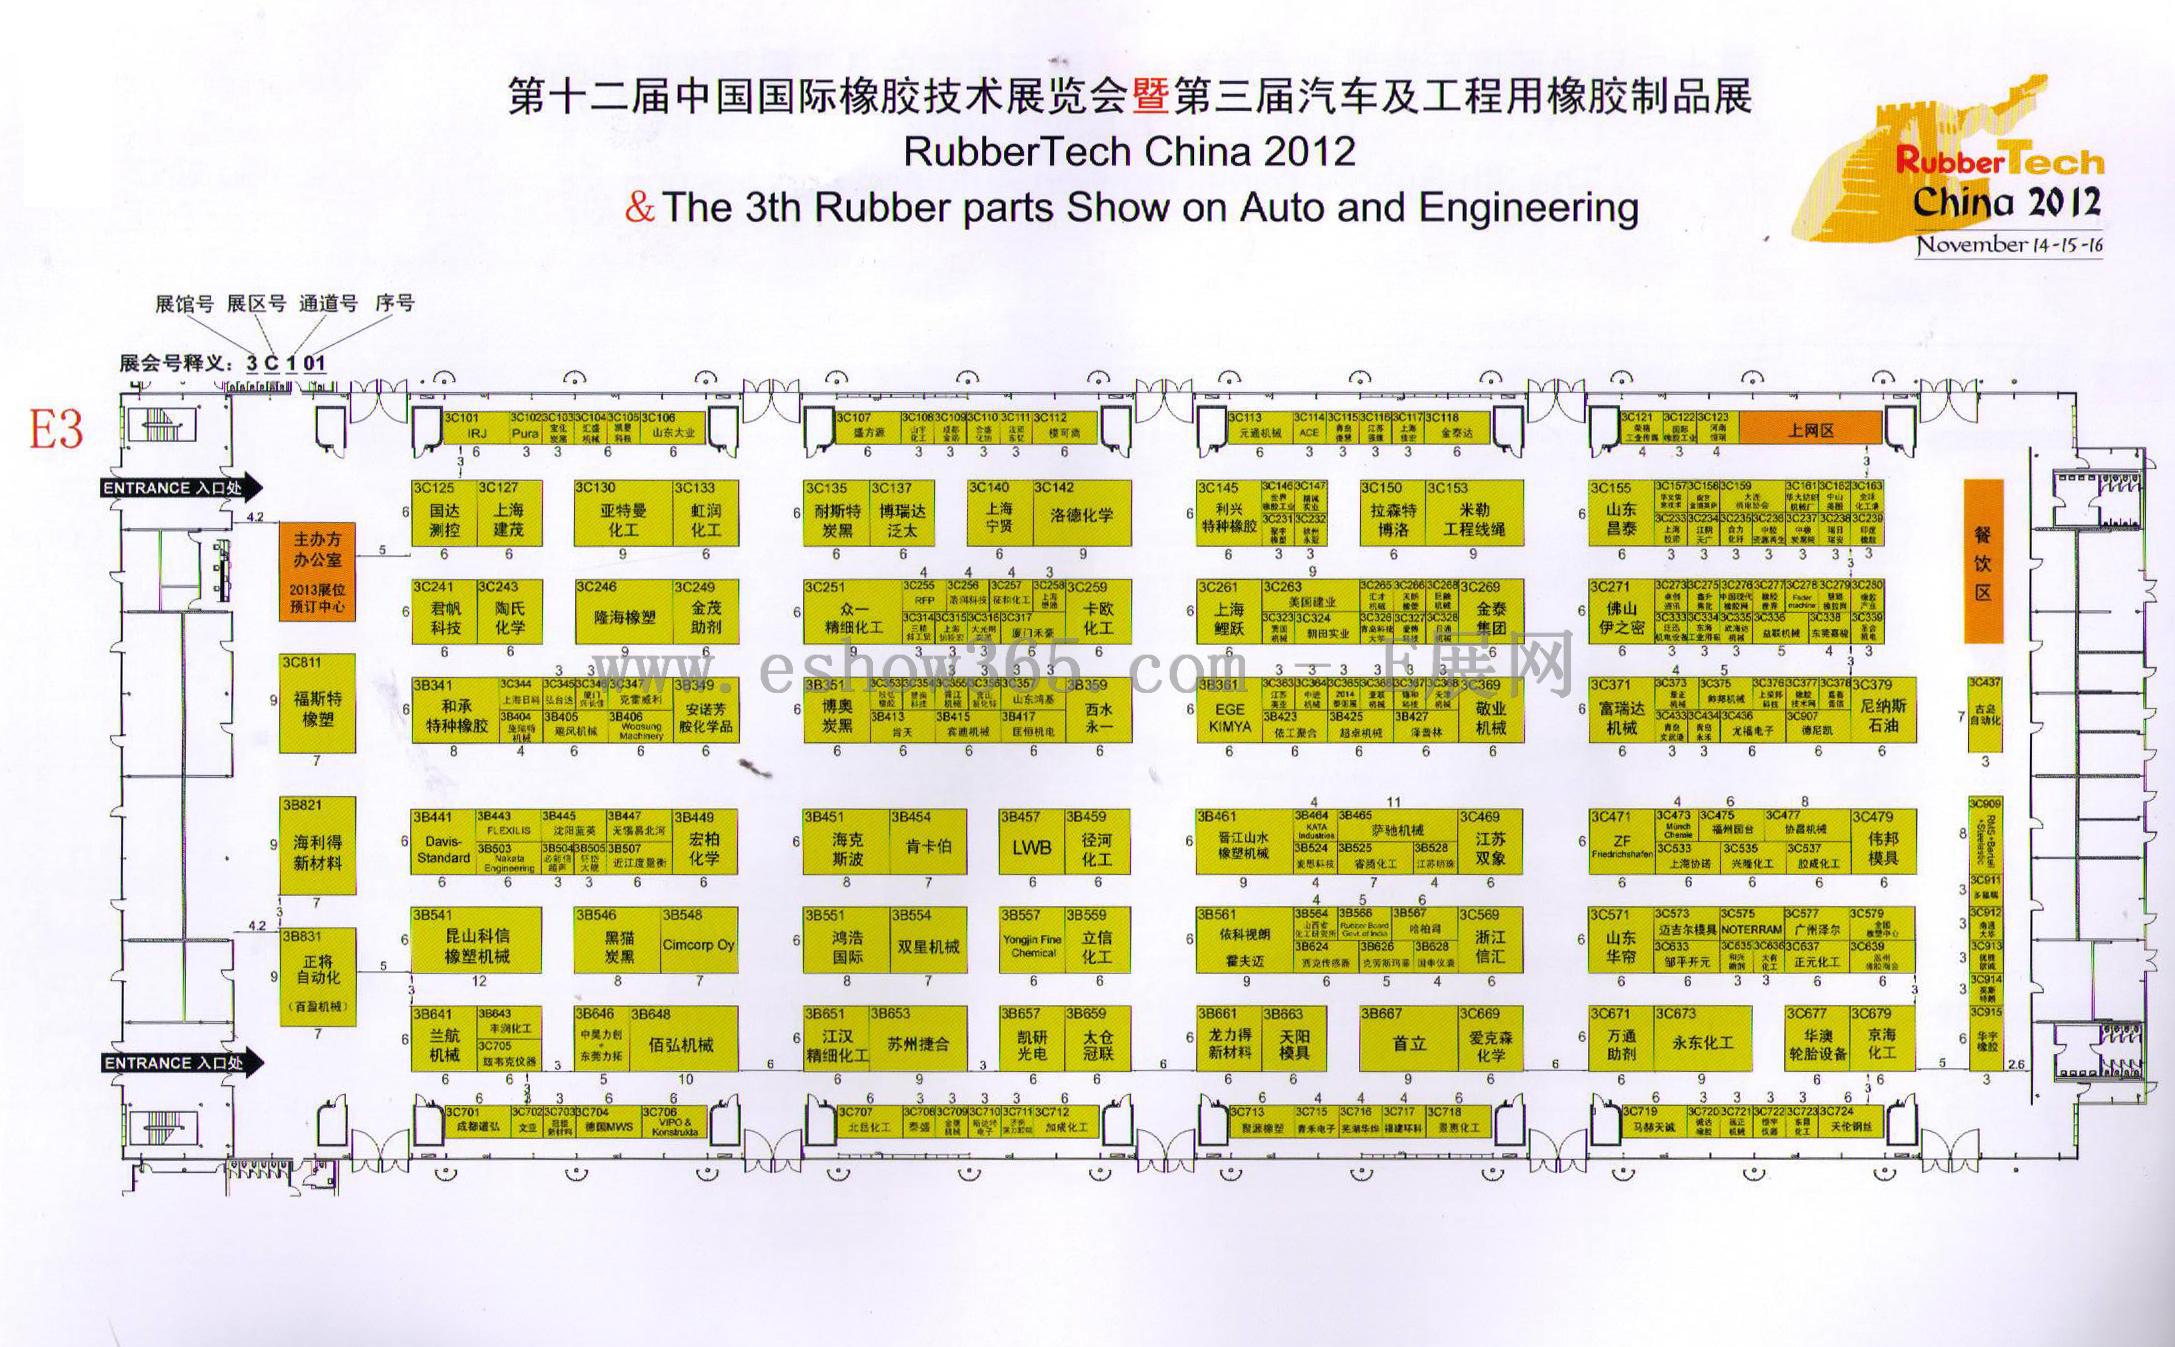 2012第十二届中国国际橡胶技术展览会 亚洲埃森轮胎展览会（亚洲埃森轮胎展 REIFEN CHINA）的平面图